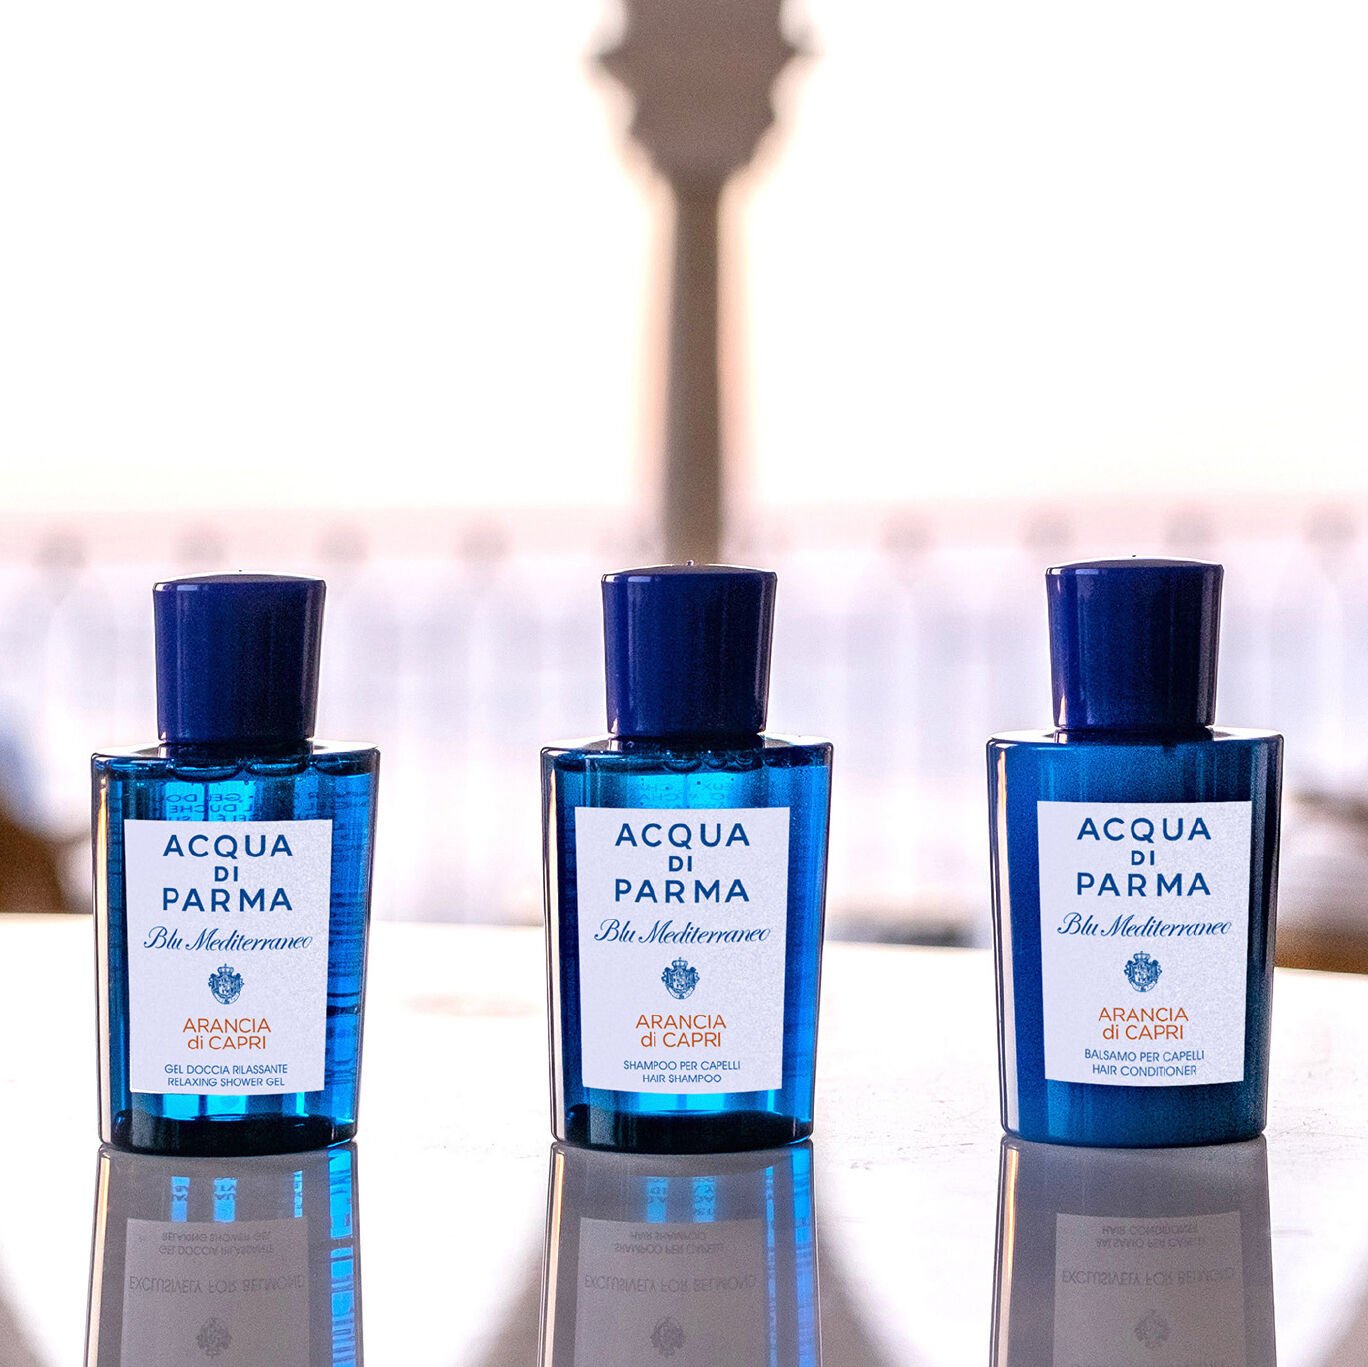 Acqua di Parma, fragrances, beauty products - Perfumes & Cosmetics – LVMH